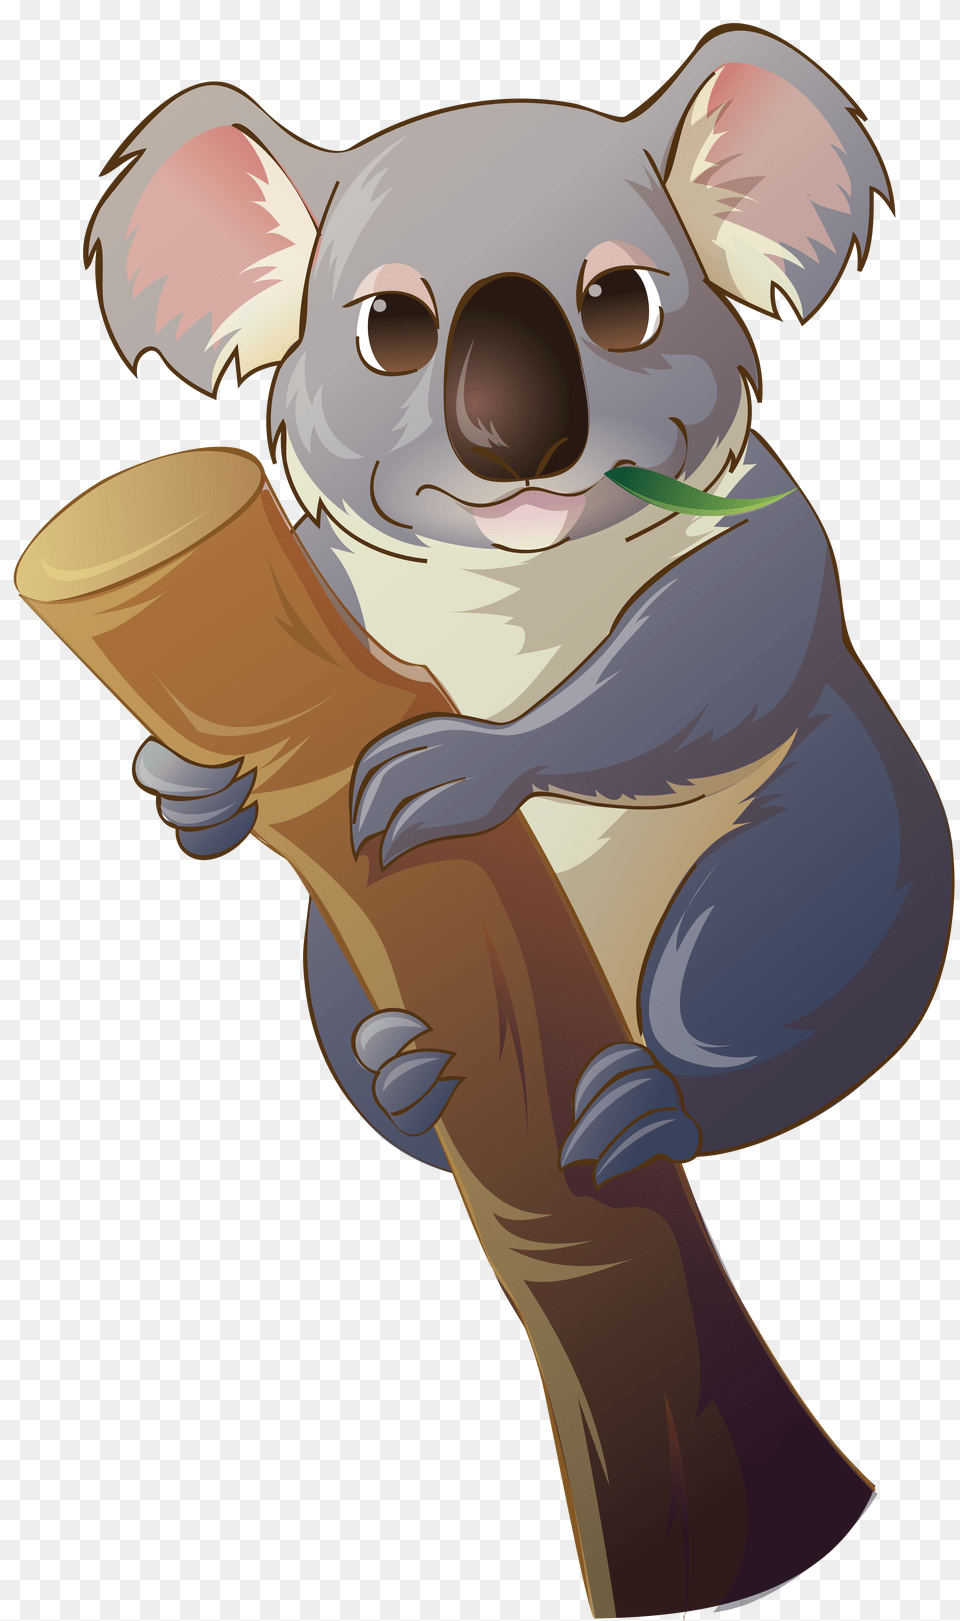 Koala, Animal, Mammal, Wildlife, Baby Png